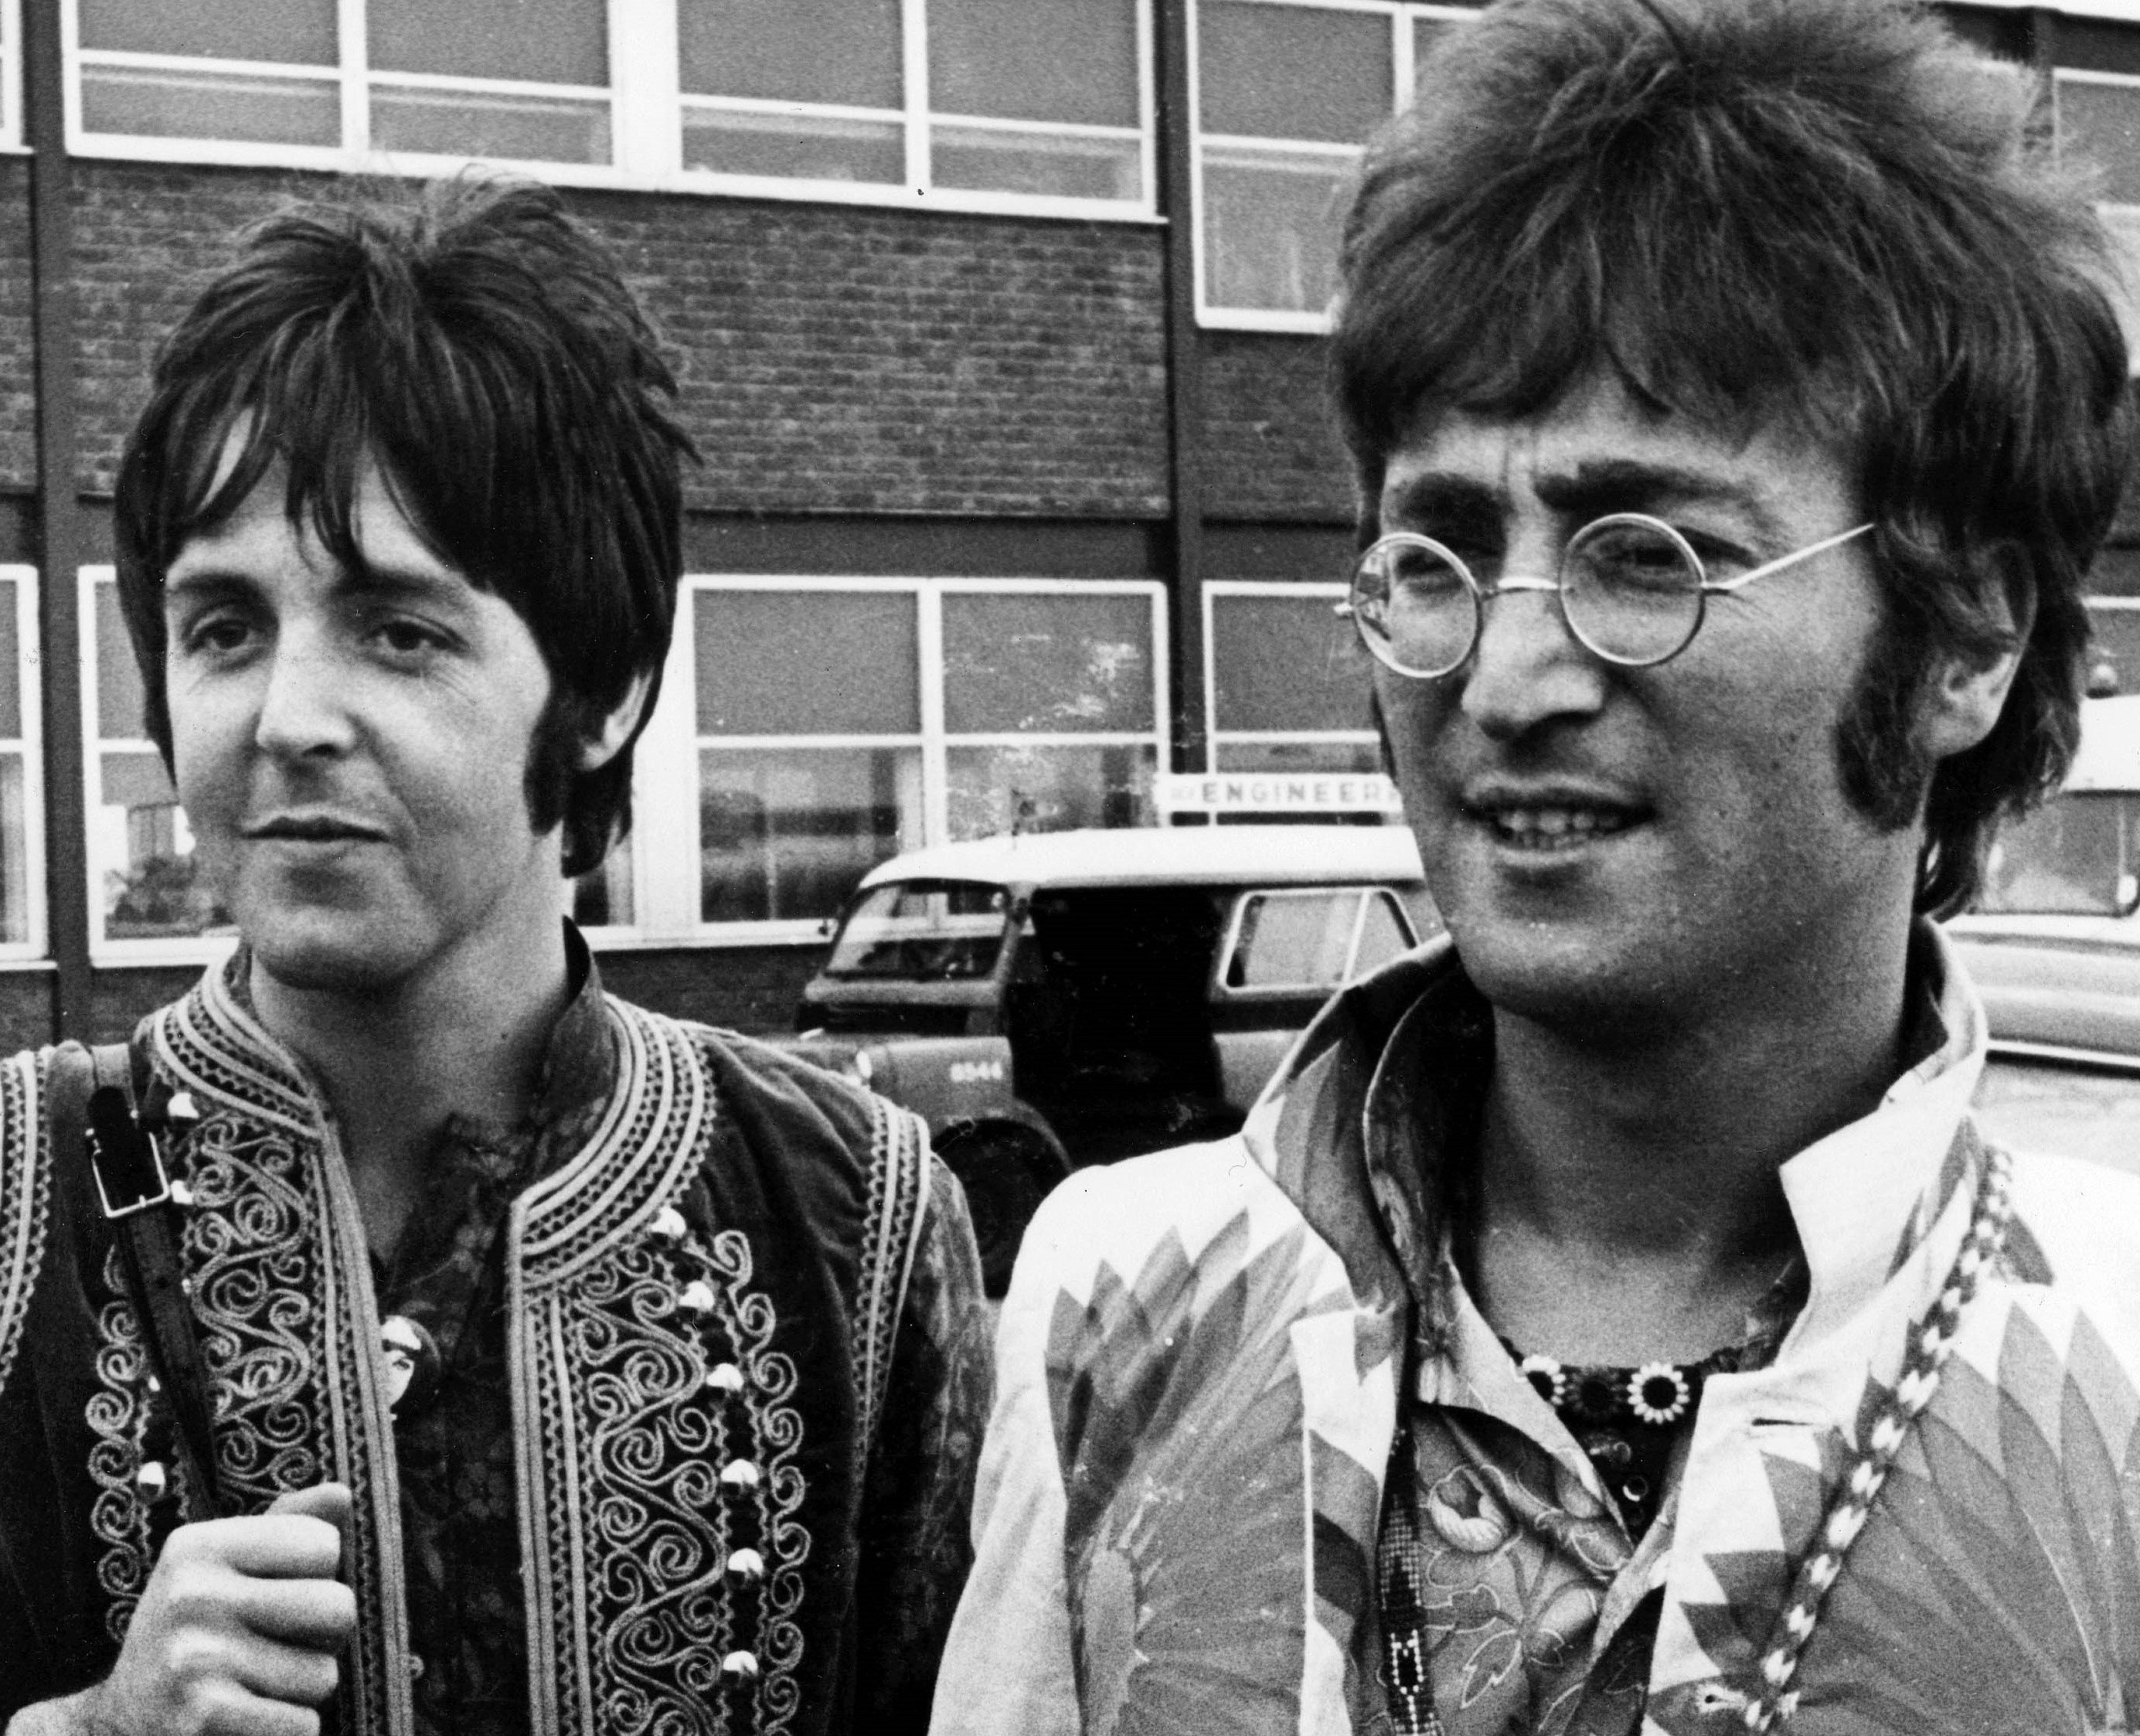 The Beatles' Paul McCartney and John Lennon near cars